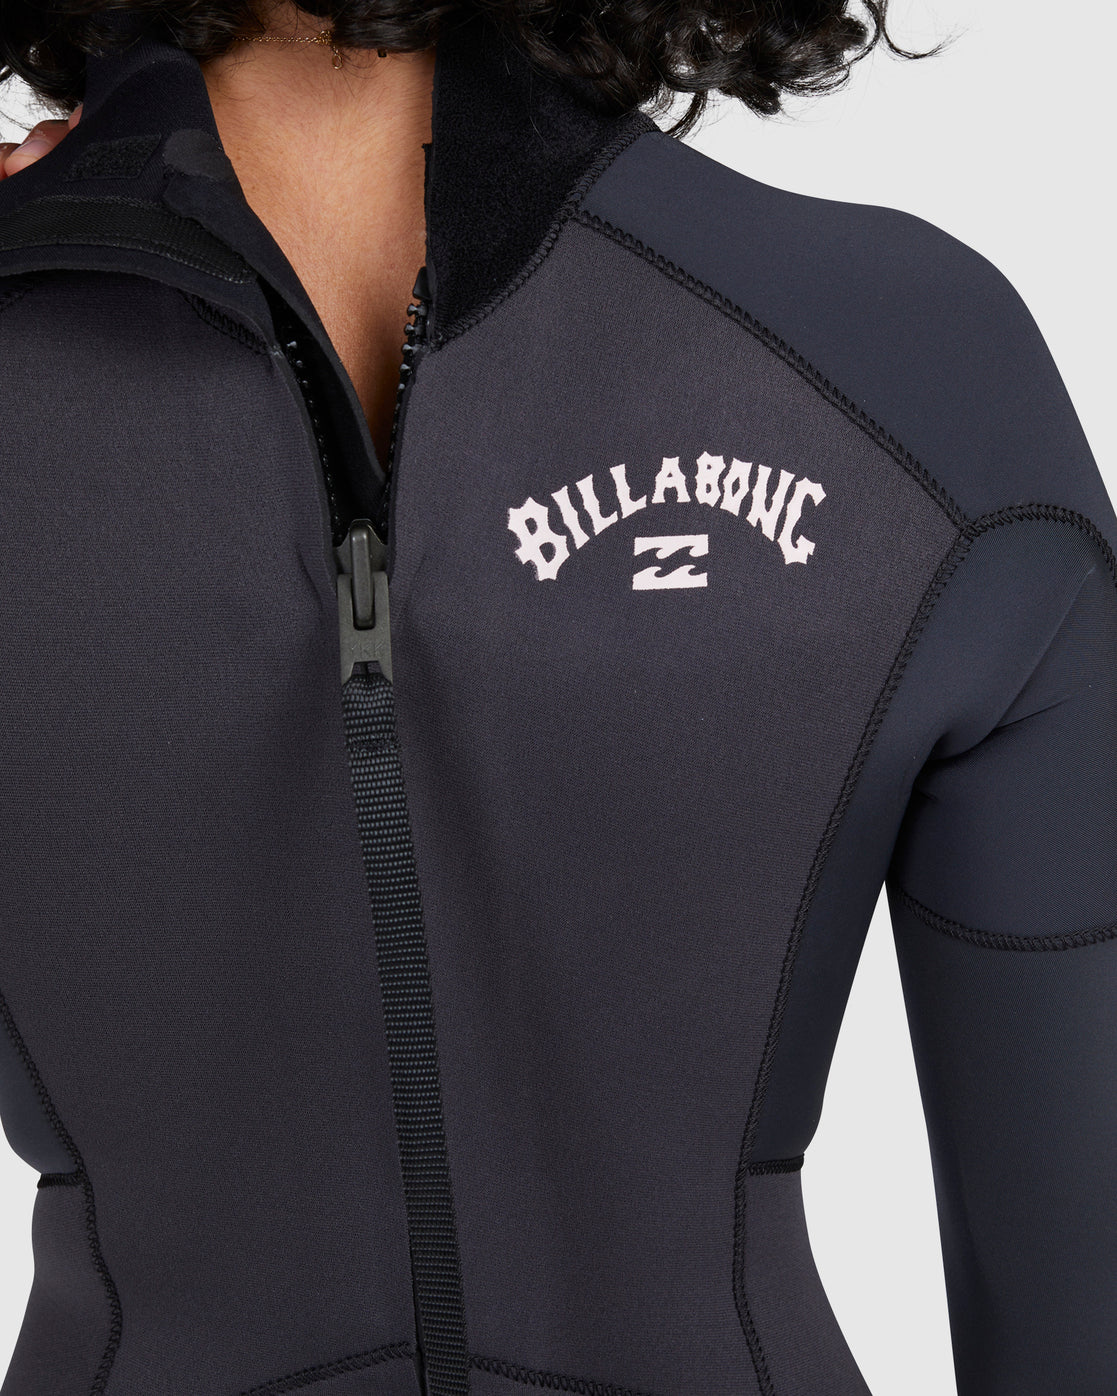 Billabong Women's 3/2mm Launch Back Zip Steamer Wetsuit